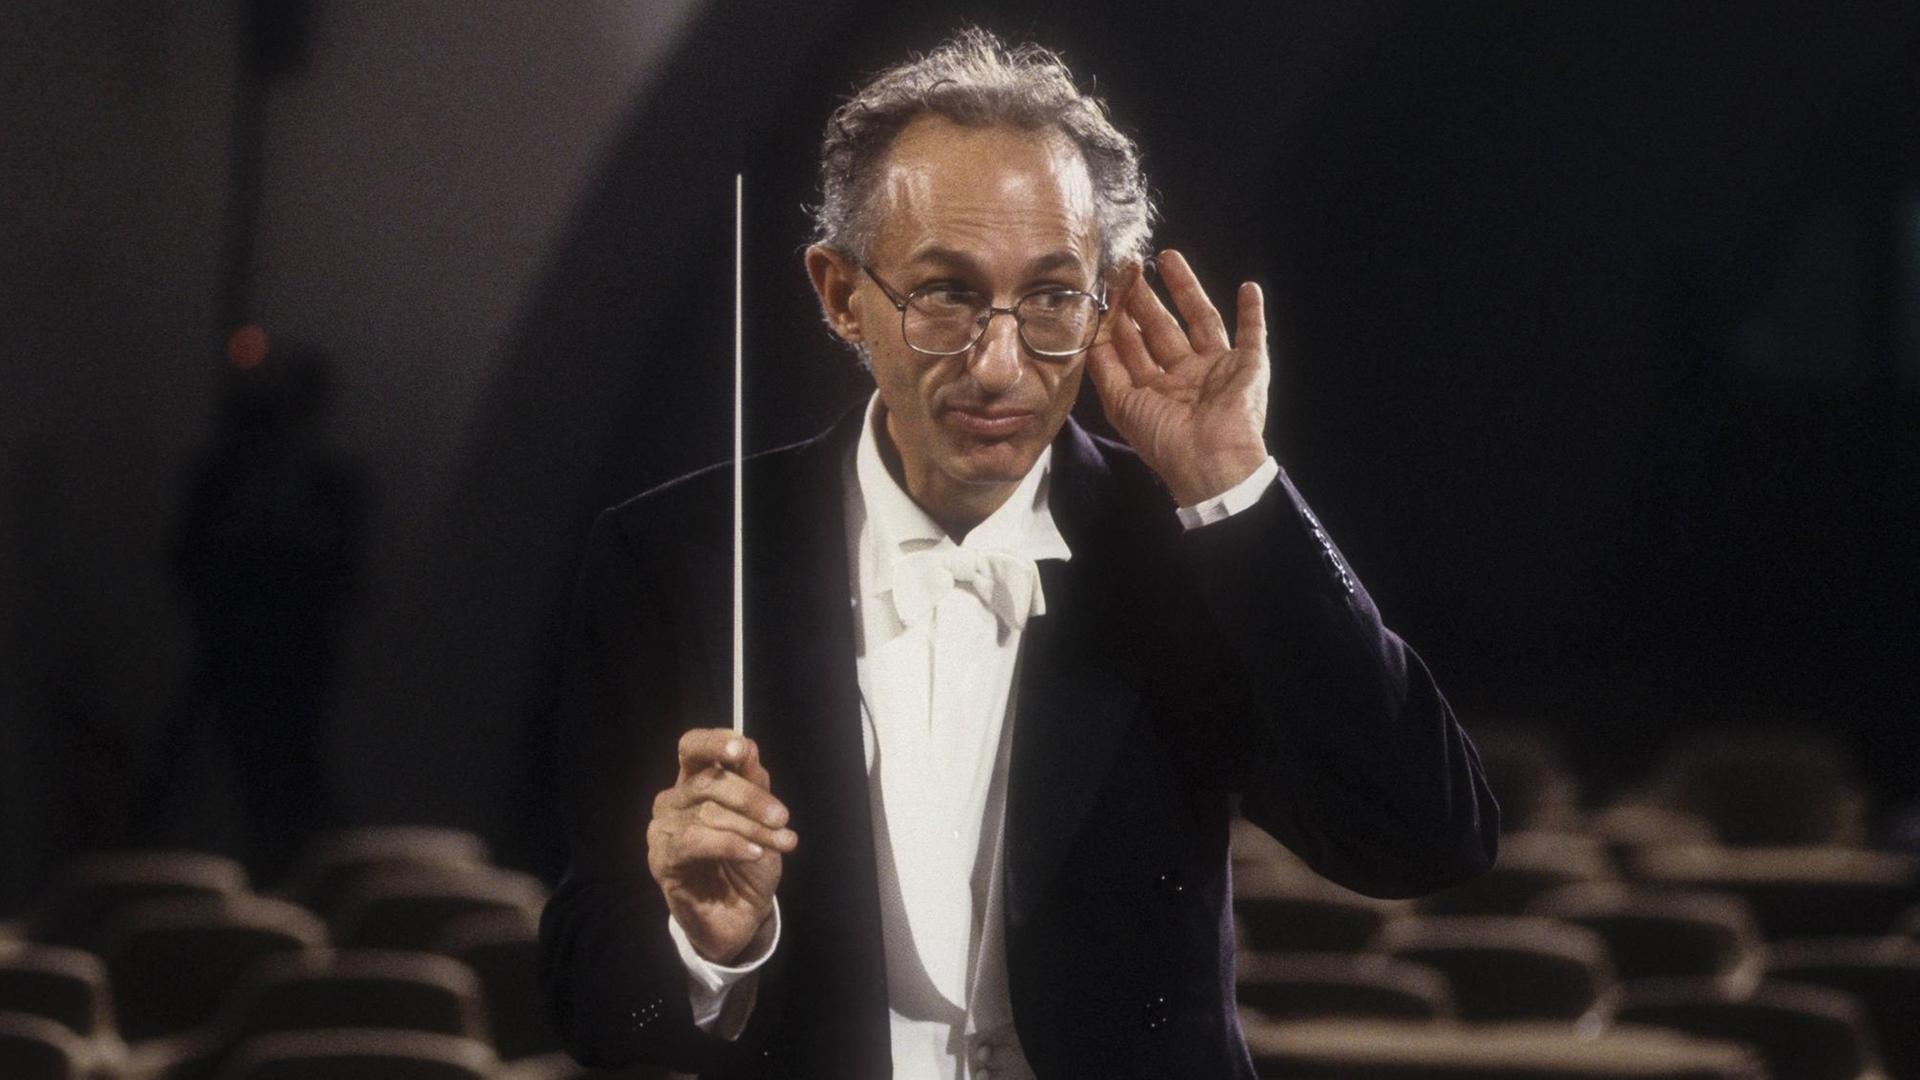 Der italienische Dirigent Claudio Scimone (mit Brille) im Konzertfrack mit weißer Fliege dirigiert mit einem Taktstock und macht eine Horch-Geste mit der linken Hand